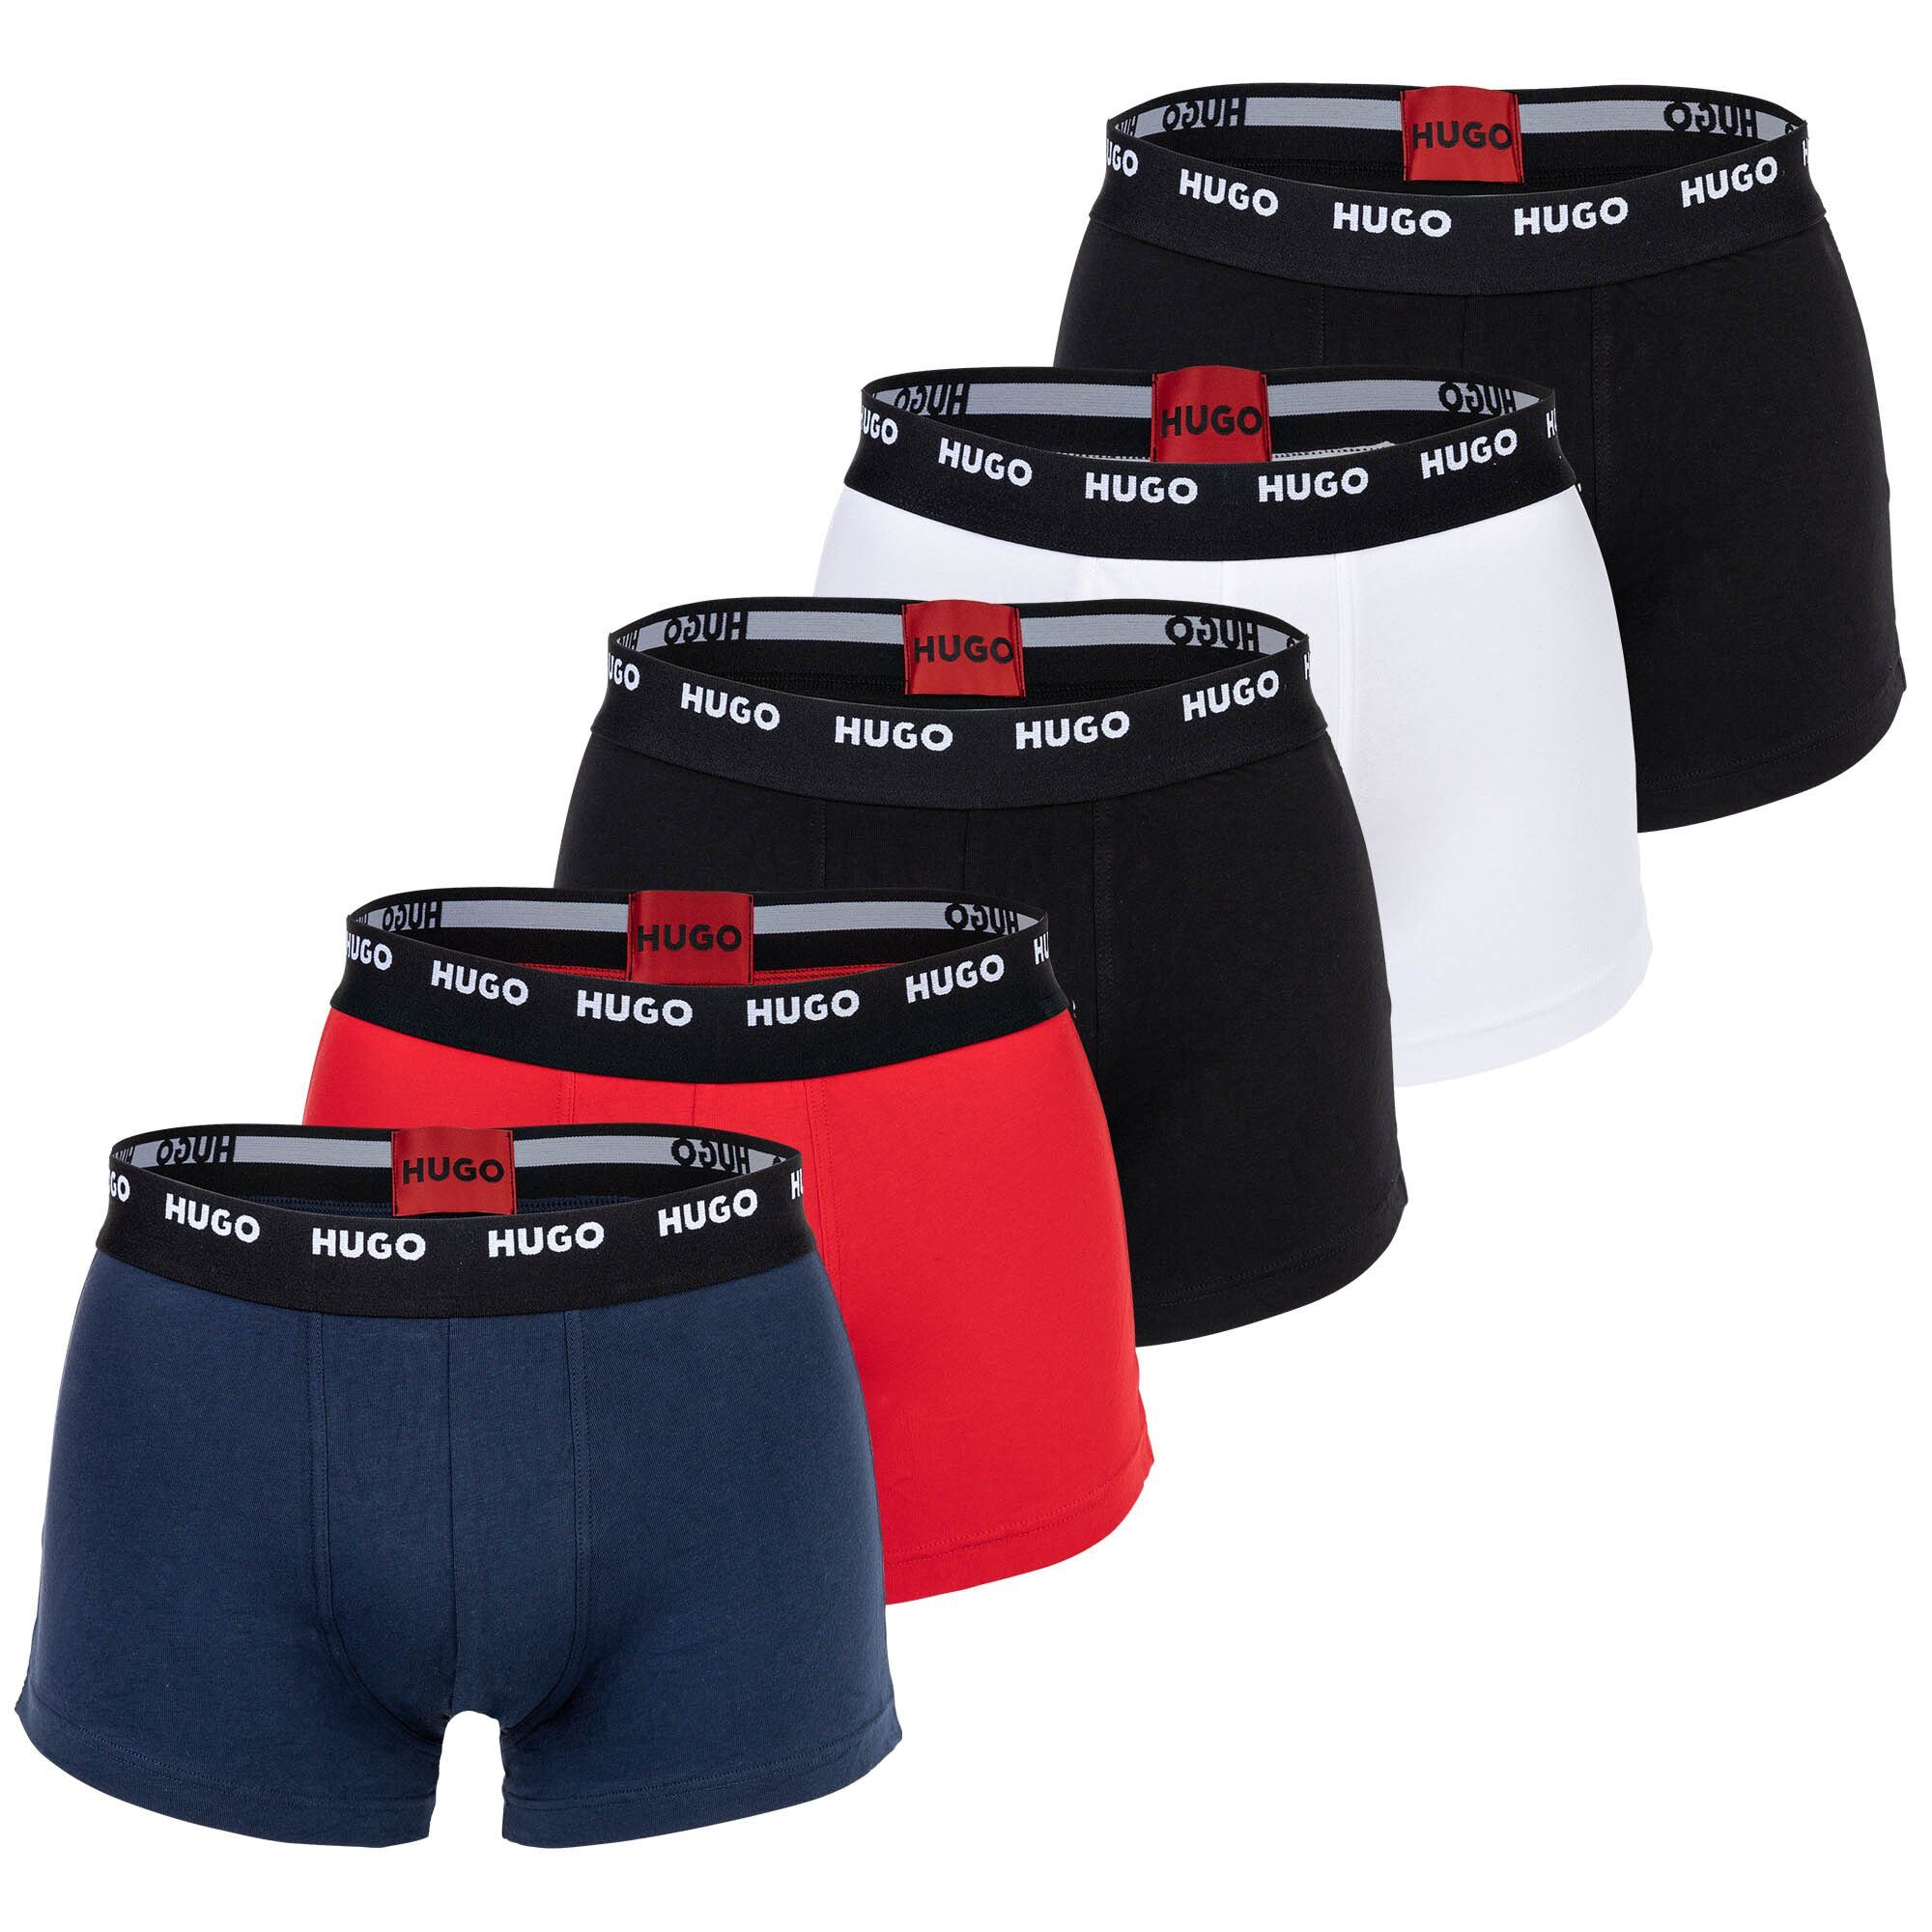 HUGO Boxer Herren Boxer Shorts, 5er Pack - Trunks Five Pack Schwarz/Rot/Weiß